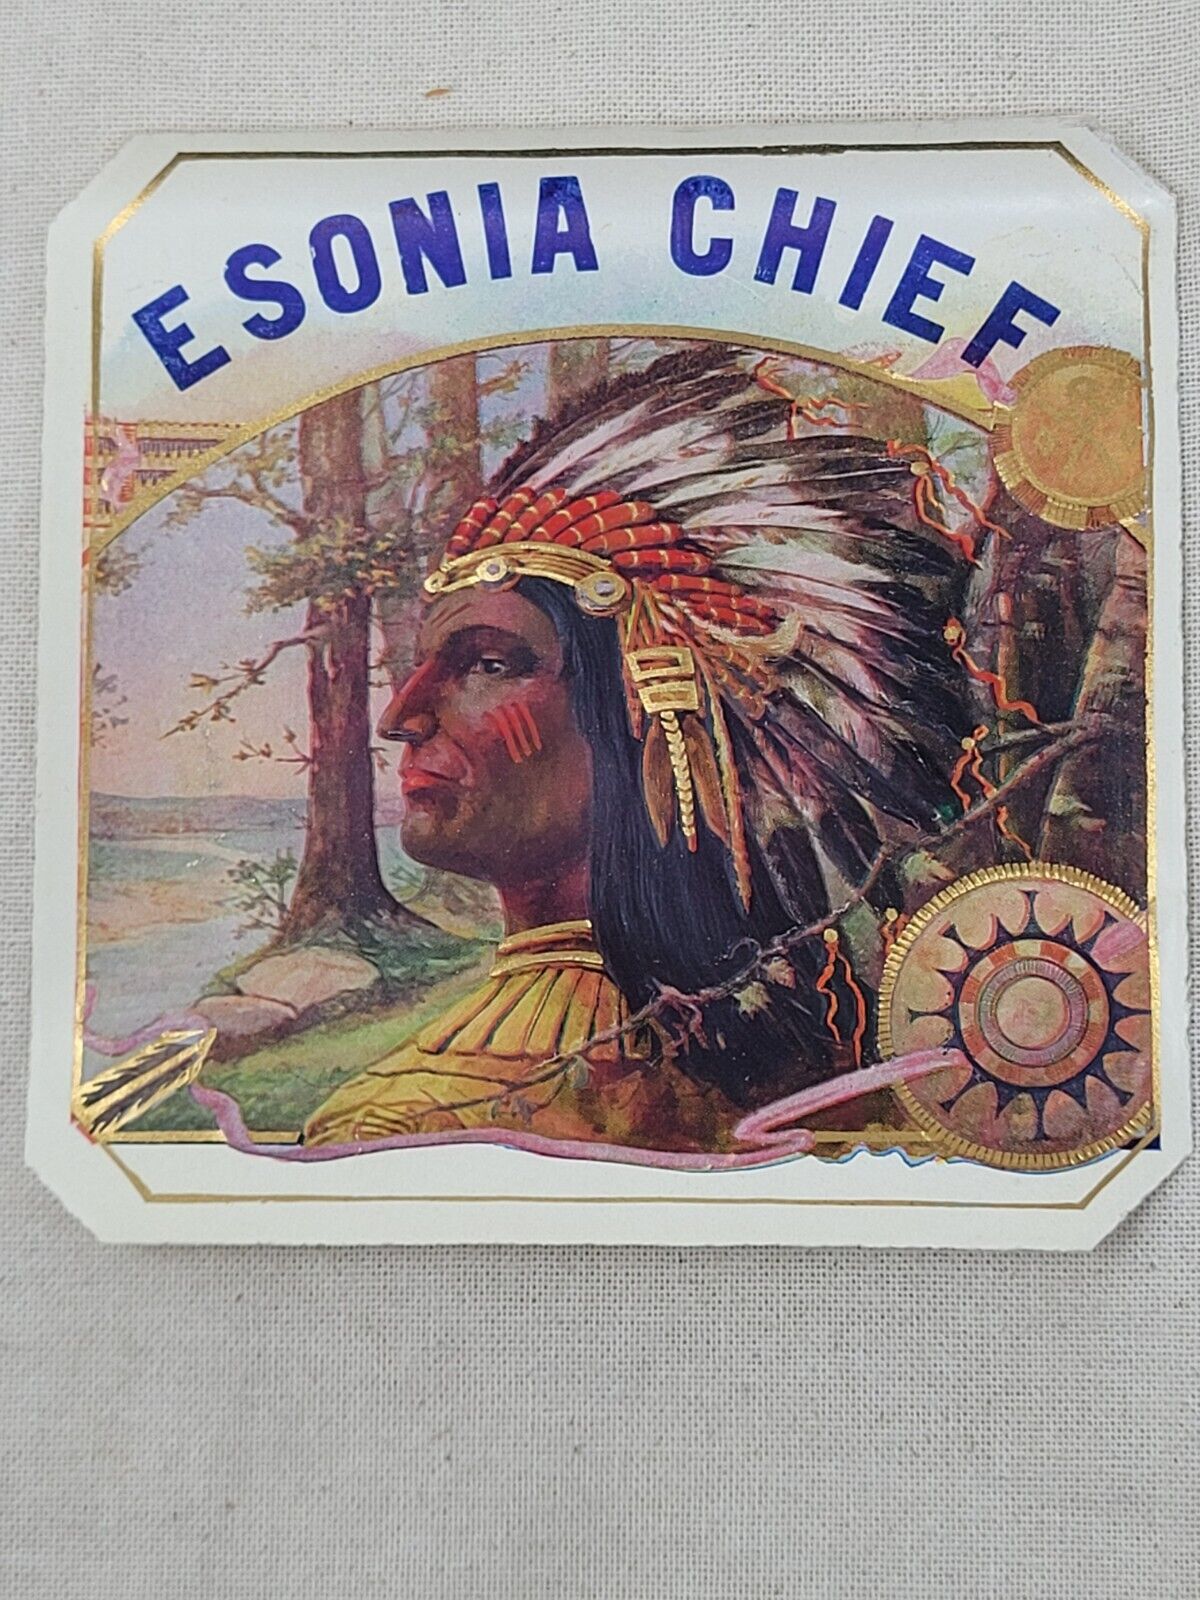 Indian Chief Cigar Label  c1910  - 4 x 4 in -- Esonia Chief  Genuine Original 